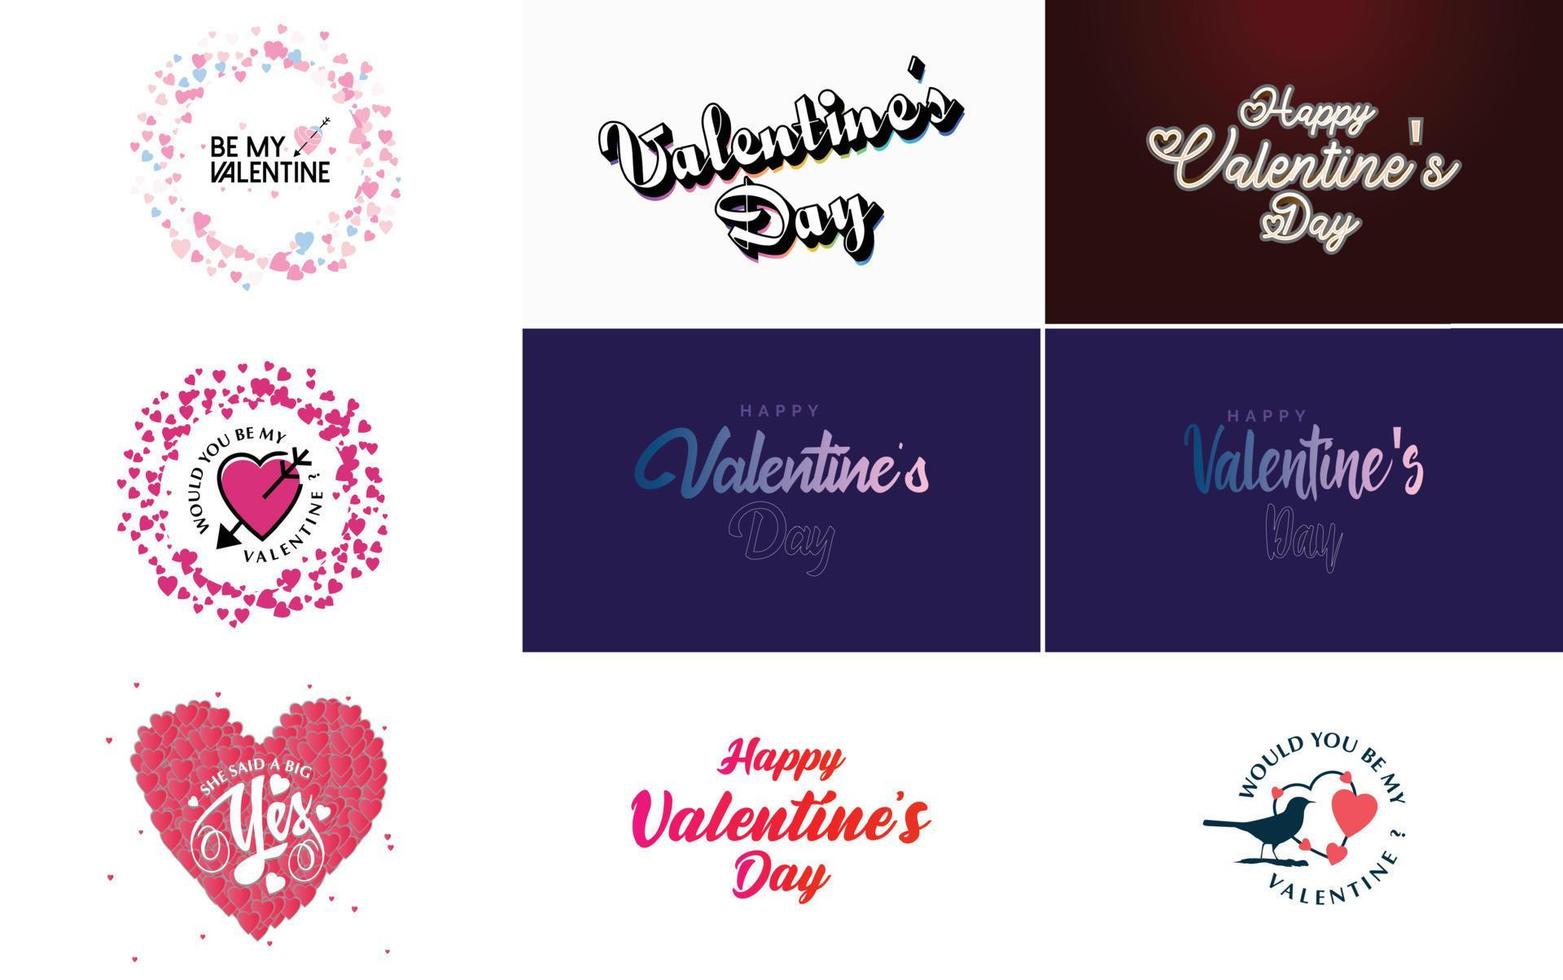 modelo de banner feliz dia dos namorados com um tema romântico e um esquema de cores rosa e vermelho vetor